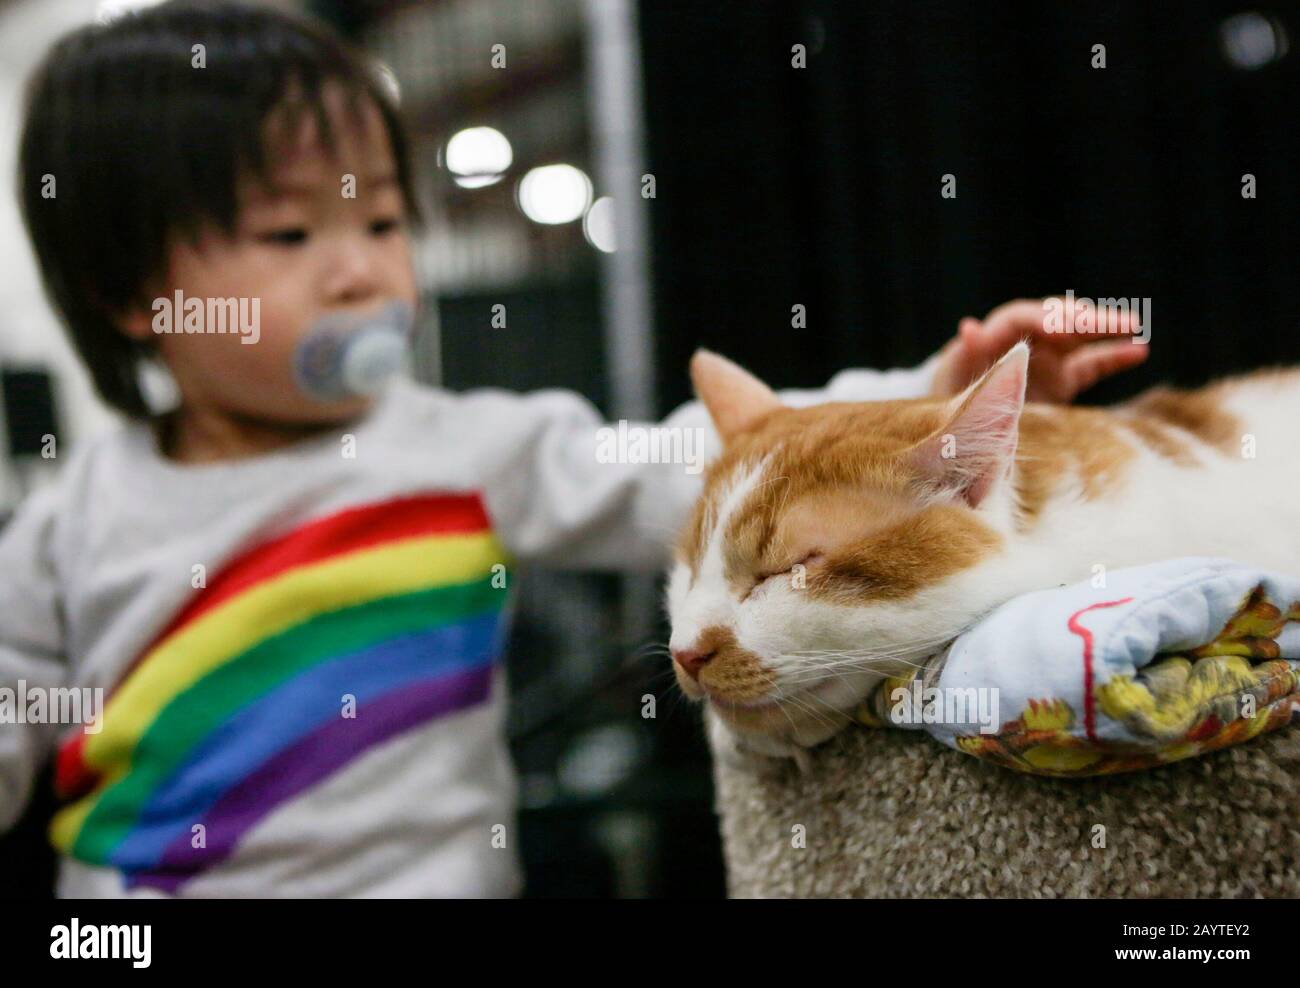 (200217) -- ABBOTSFORD, 17 febbraio 2020 (Xinhua) -- un bambino cerca di accarezzare un gatto durante uno spettacolo di animali domestici a Abbotsford, Canada, 16 febbraio 2020. L'annuale spettacolo di animali da compagnia ha attirato decine di migliaia di amanti degli animali a venire. (Foto Di Liang Sen/Xinhua) Foto Stock